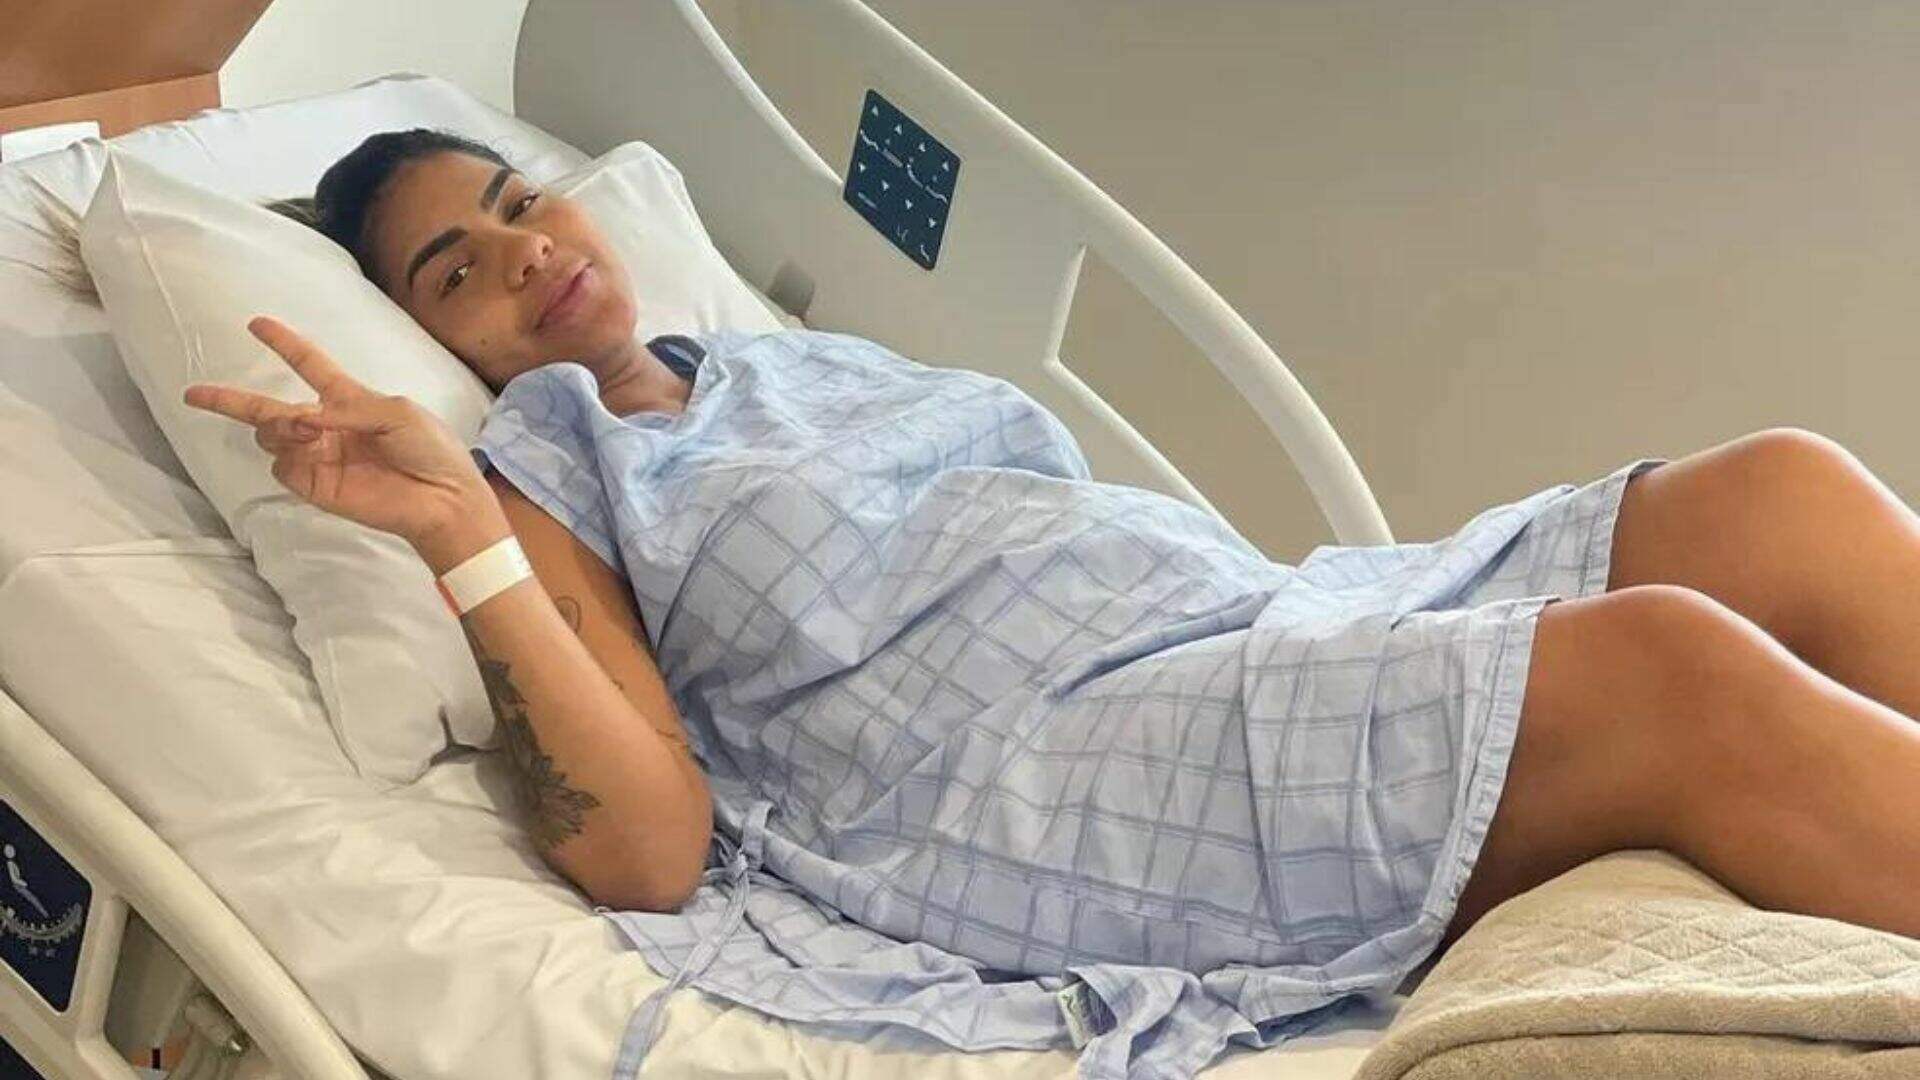 Que susto! Após dores fortes Tays Reis passa por cirurgia de emergência - Metropolitana FM